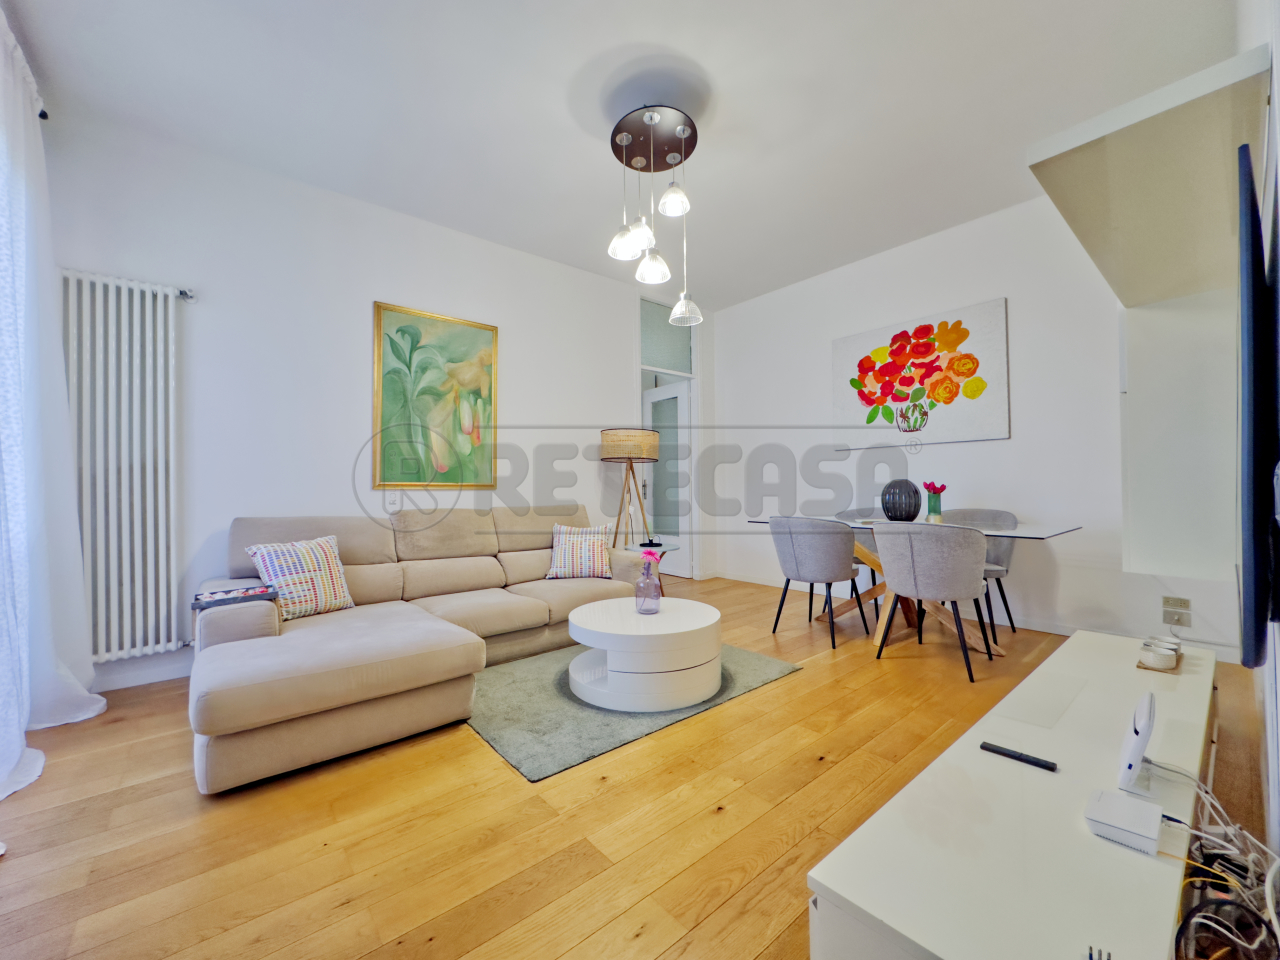 Appartamento in vendita a Vicenza, 6 locali, prezzo € 145.000 | PortaleAgenzieImmobiliari.it